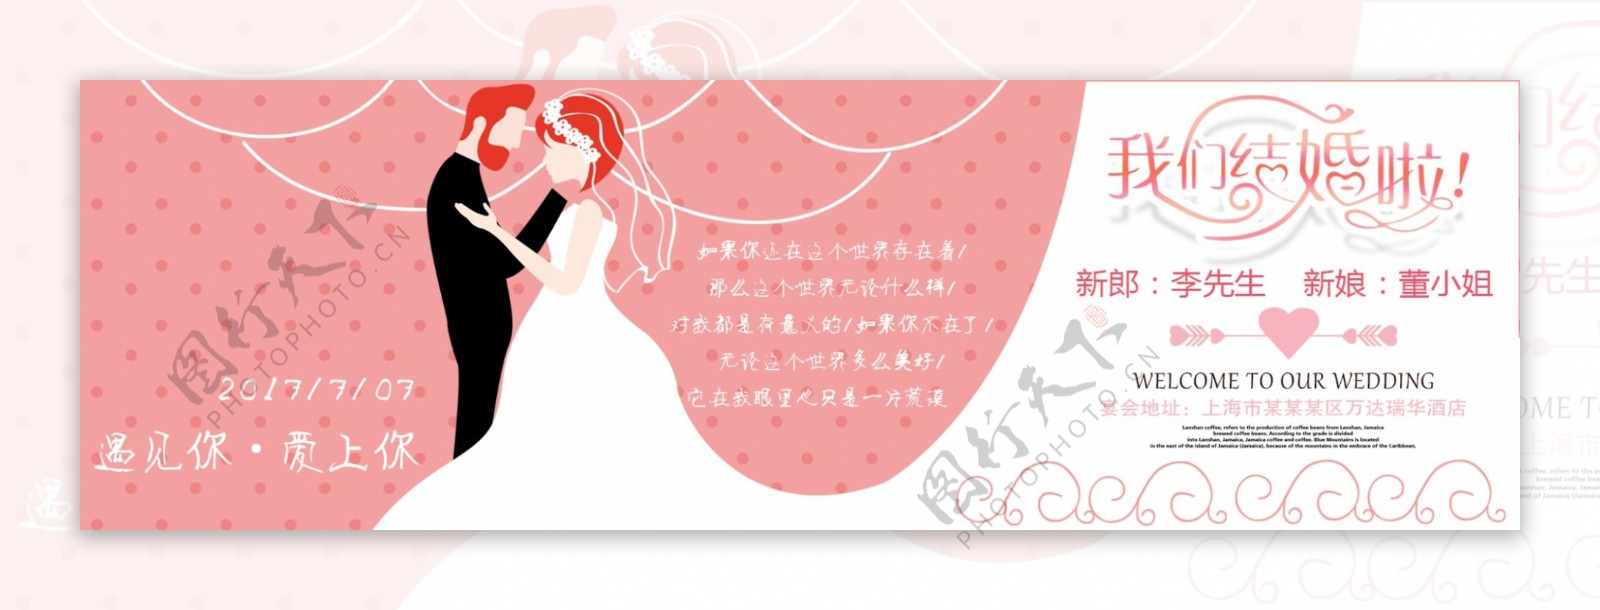 粉色婚礼结婚海报设计